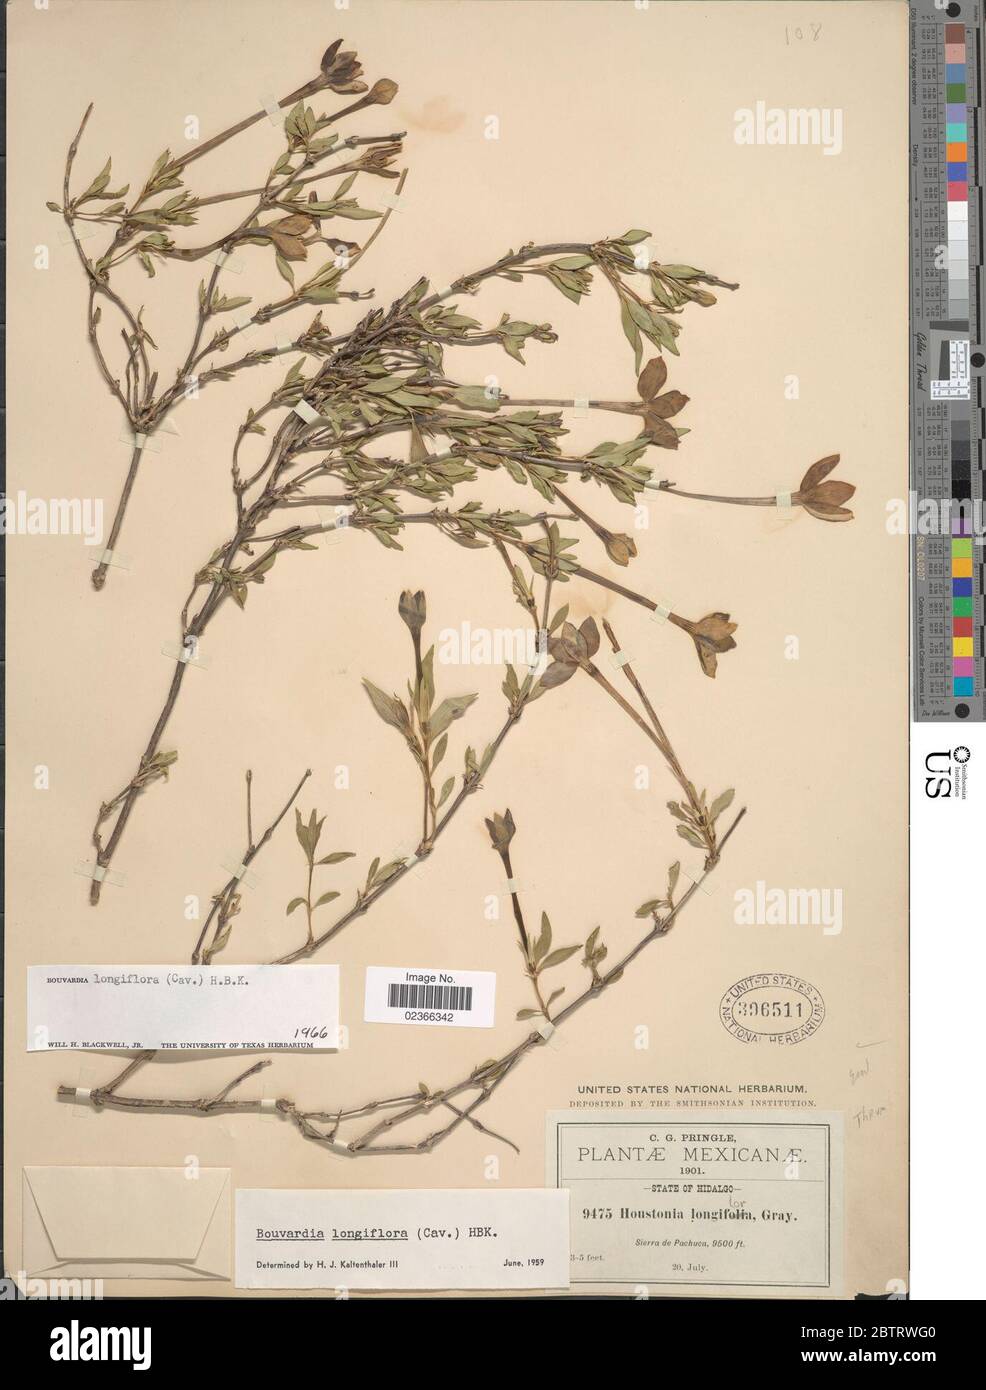 Bouvardia longiflora Cav Kunth. Stock Photo